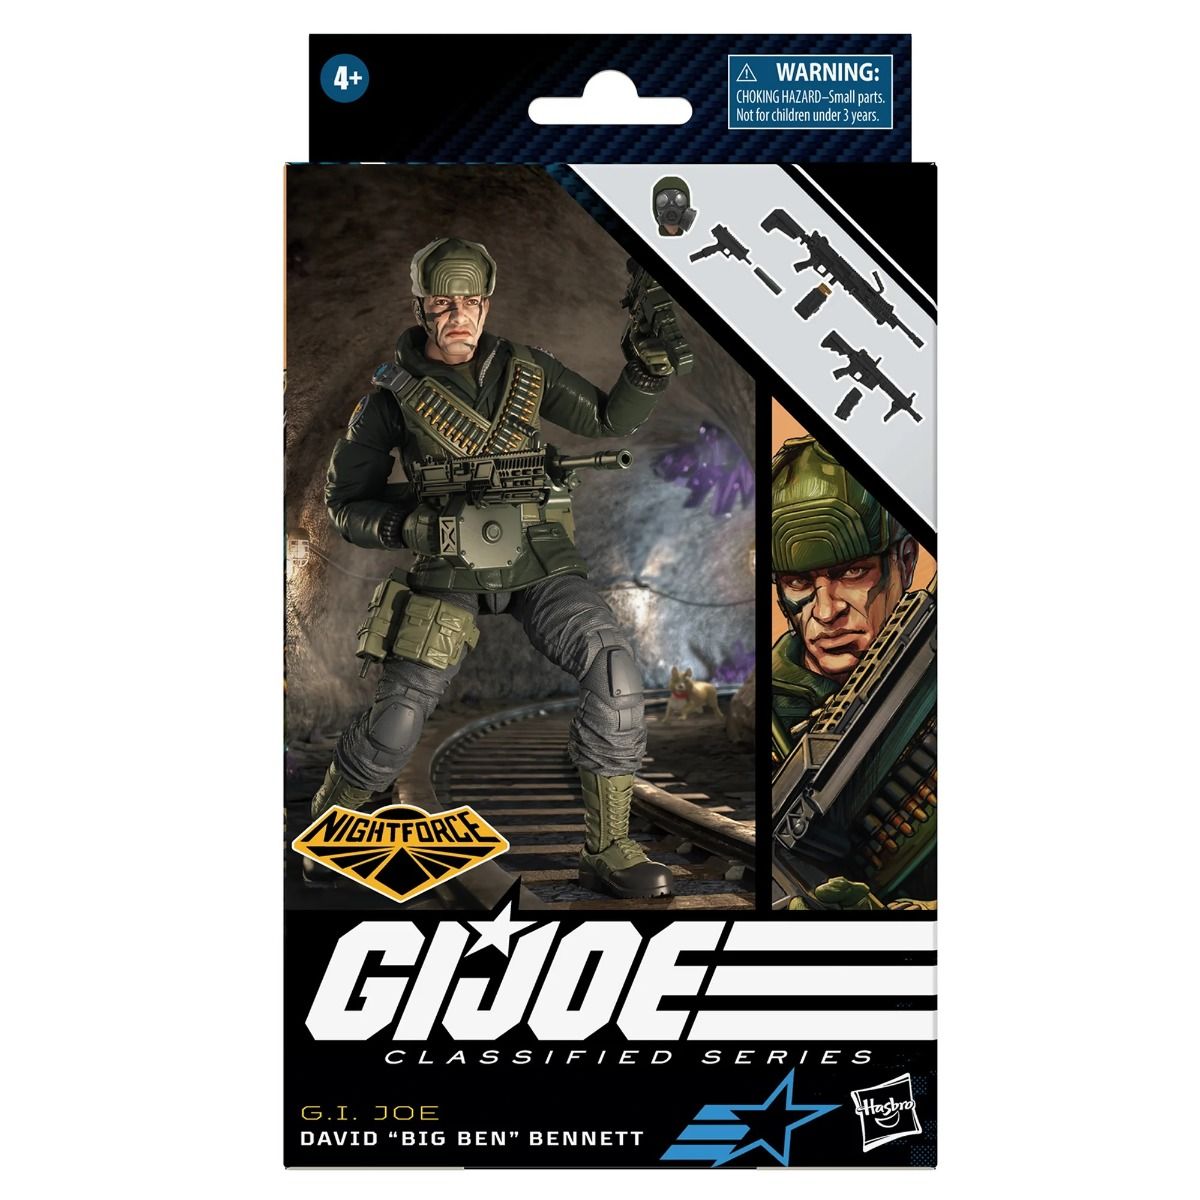 G.I. Joe Classified Series Nightforce David "Big Ben" Bennett 6-Inch Action Figure画像